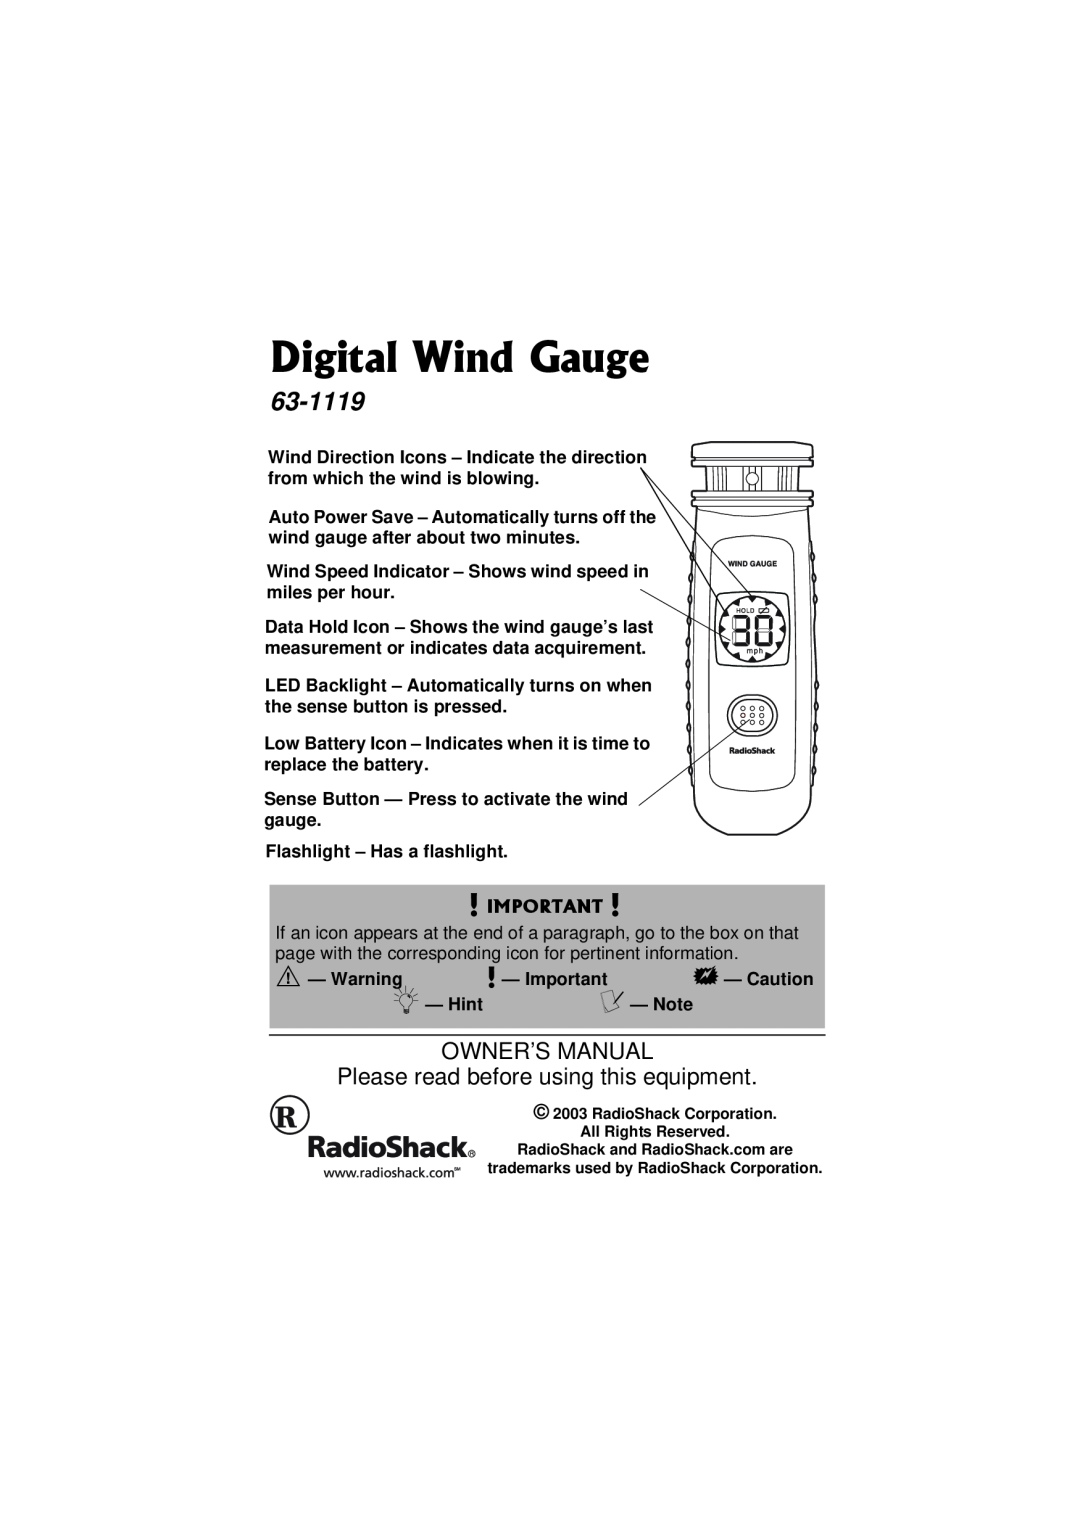 Radio Shack 63-1119 owner manual Digital Wind Gauge, Please read before using this equipment 